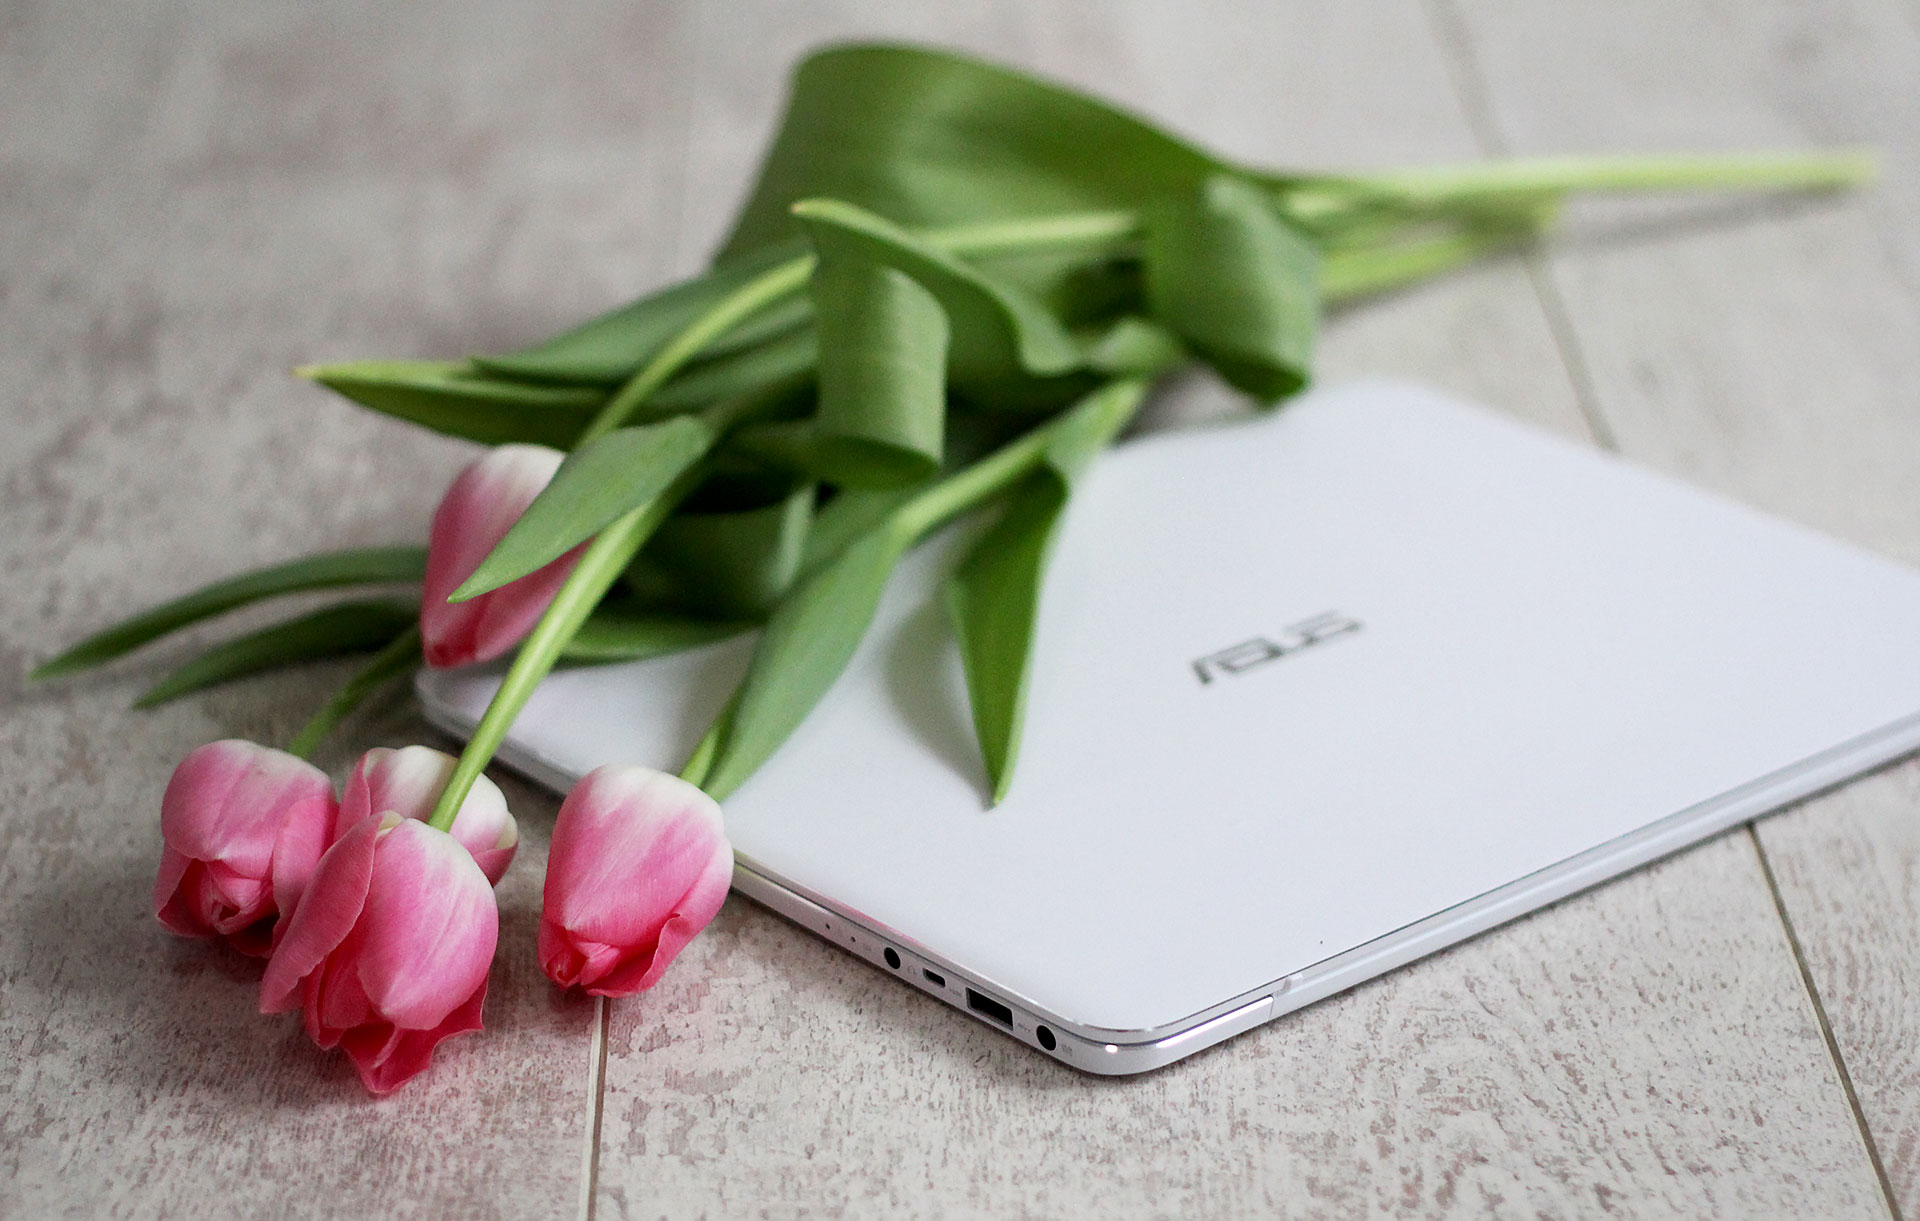 Asus ZenBook UX305CA отзыв обзор цена купить